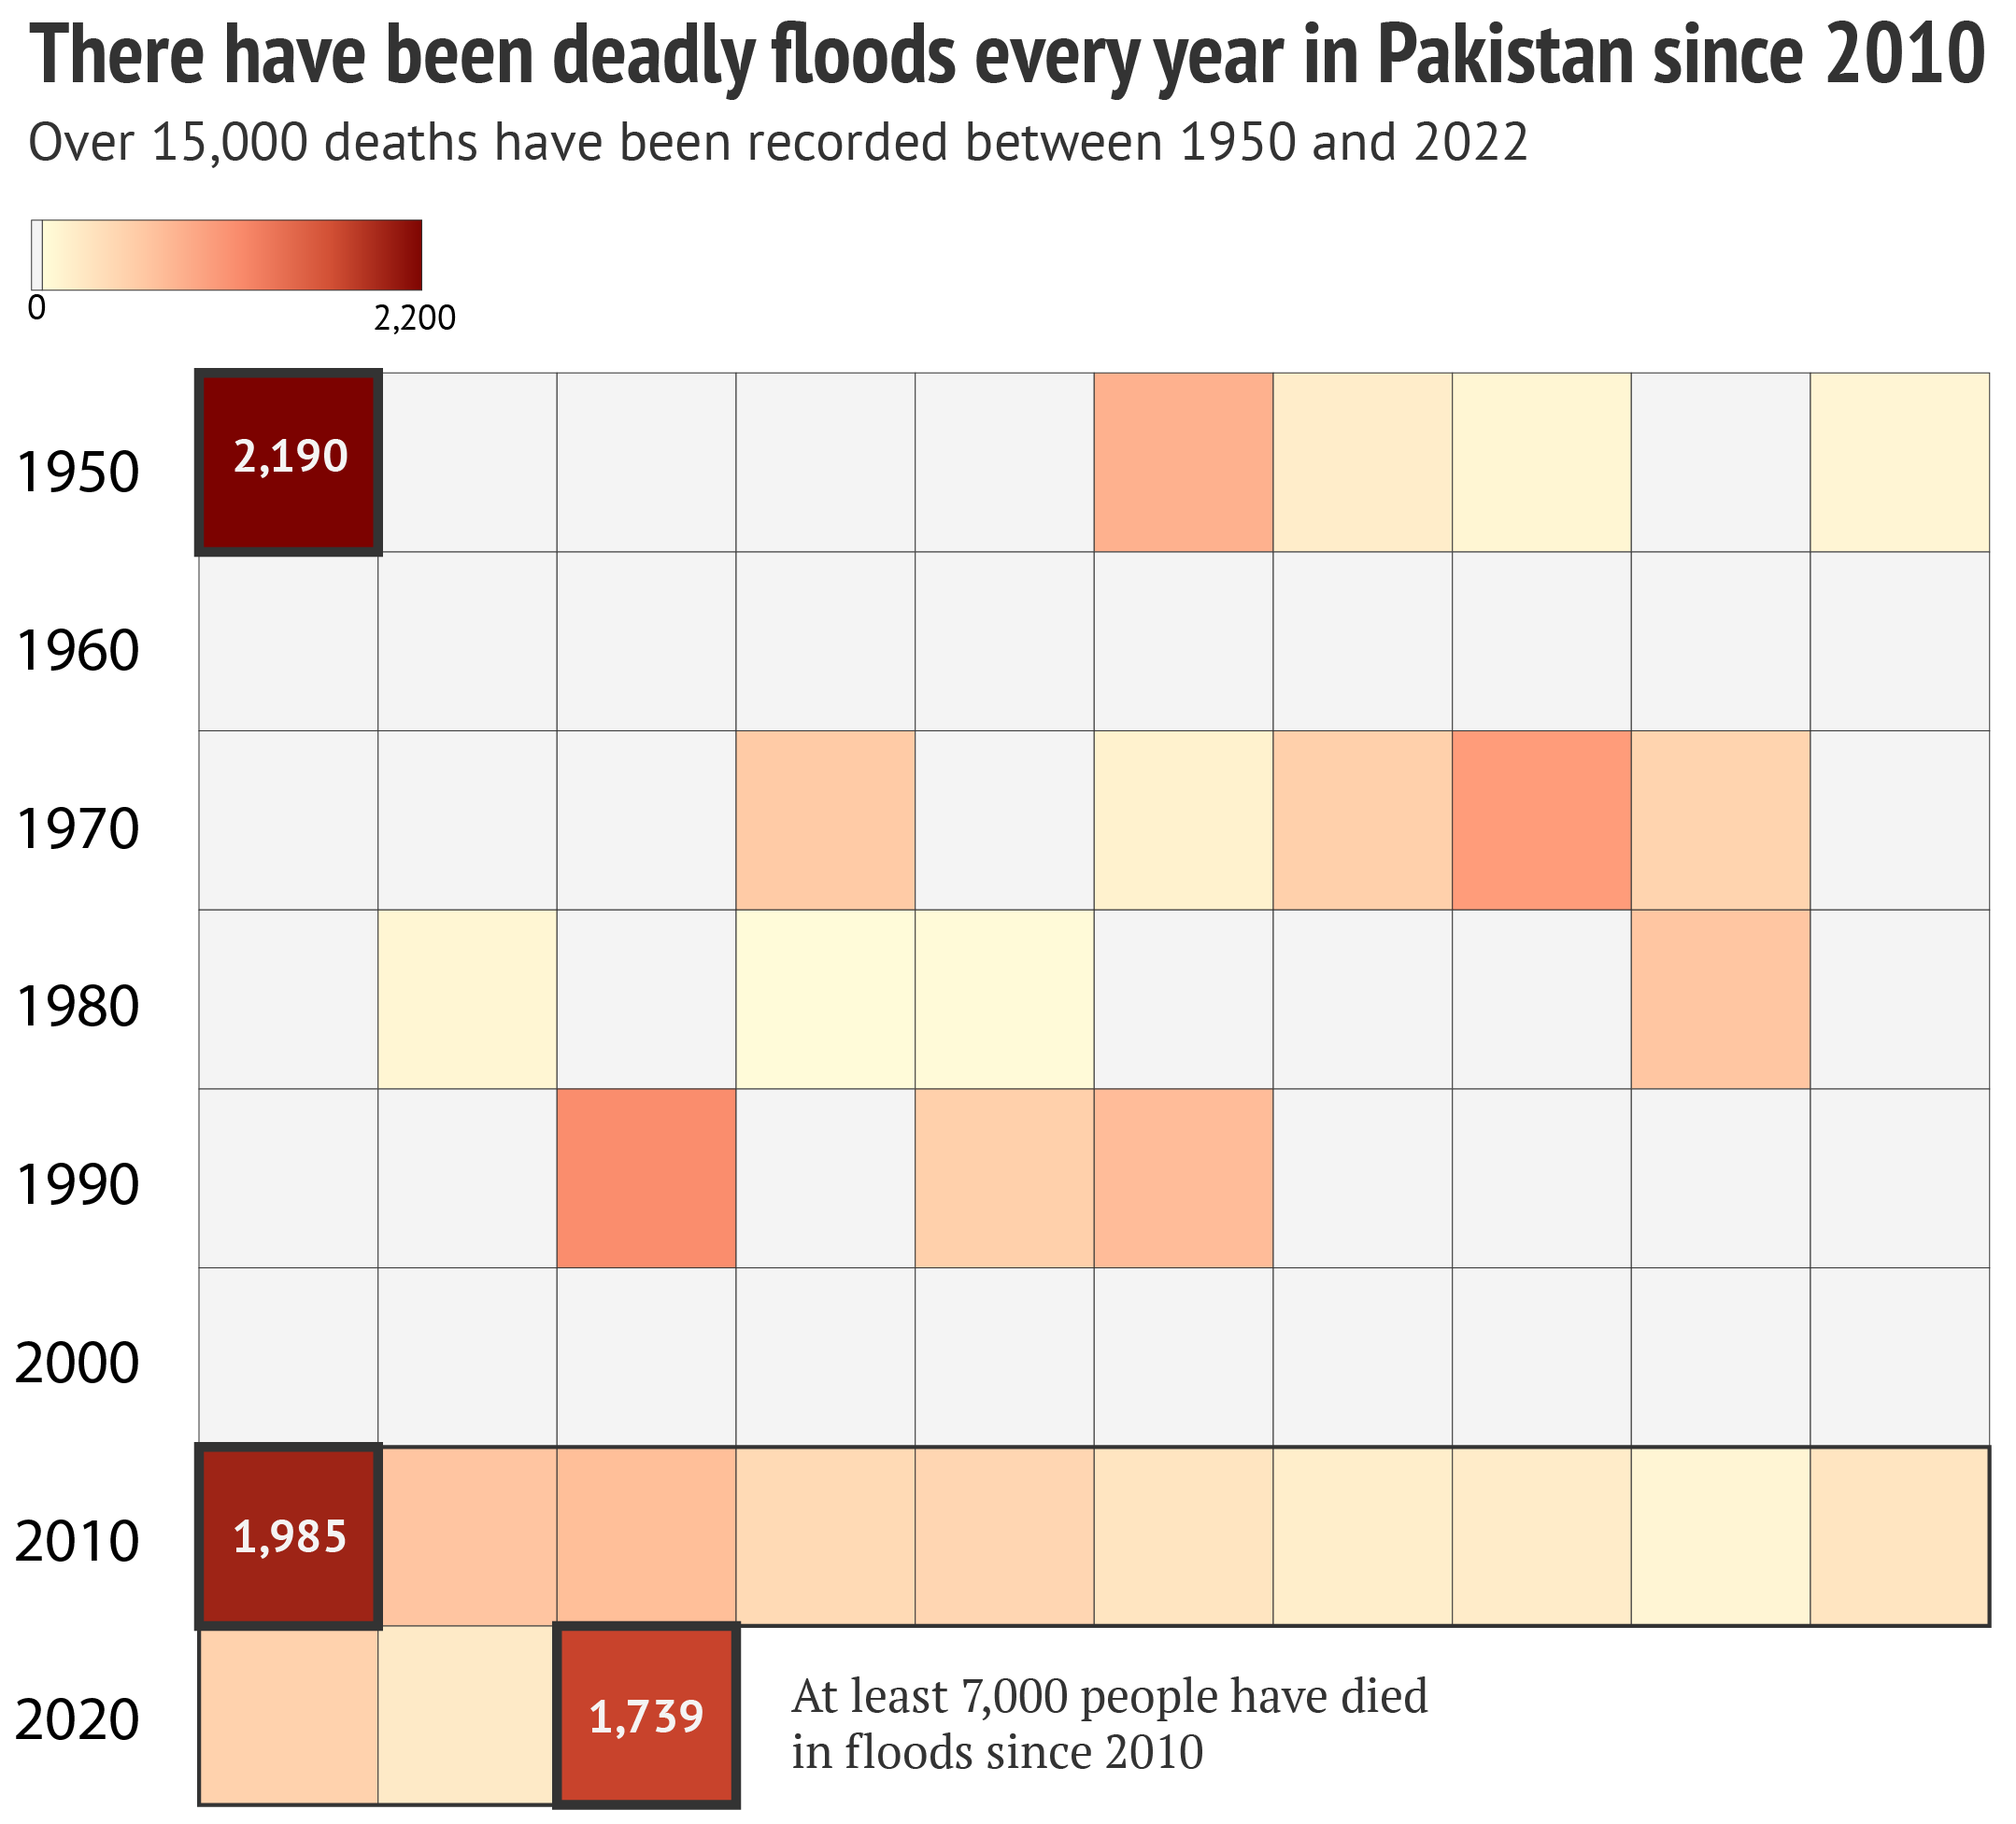 ग्राफ़िक से पता चलता है कि 2010 के बाद से पाकिस्तान में हर साल घातक बाढ़ आ रही है।